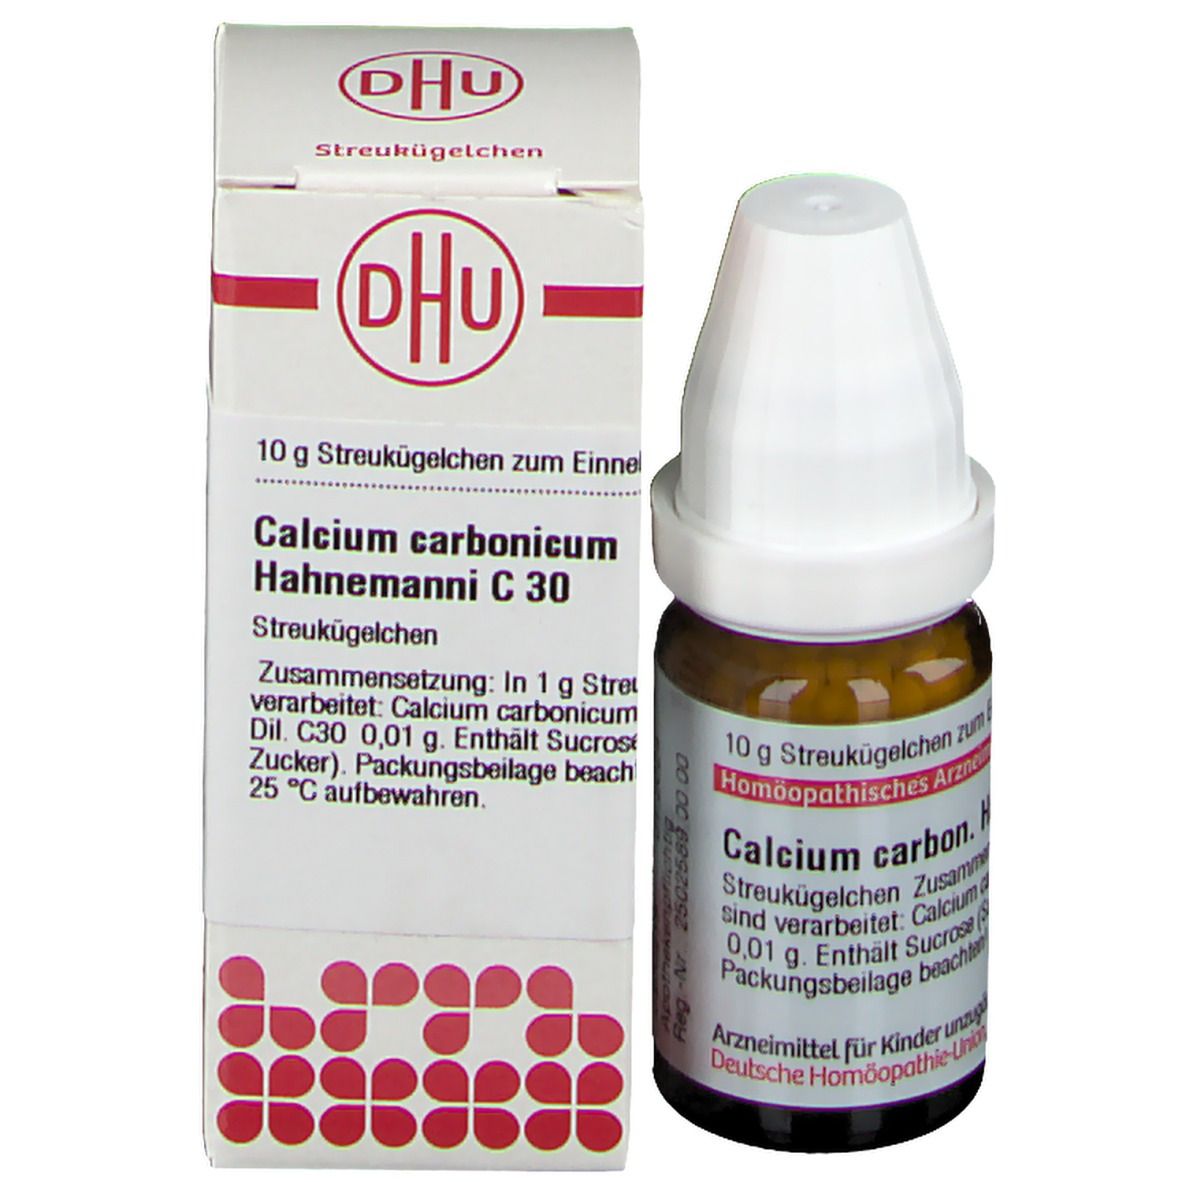 DHU Calcium Carbonicum Hahnemanni C30